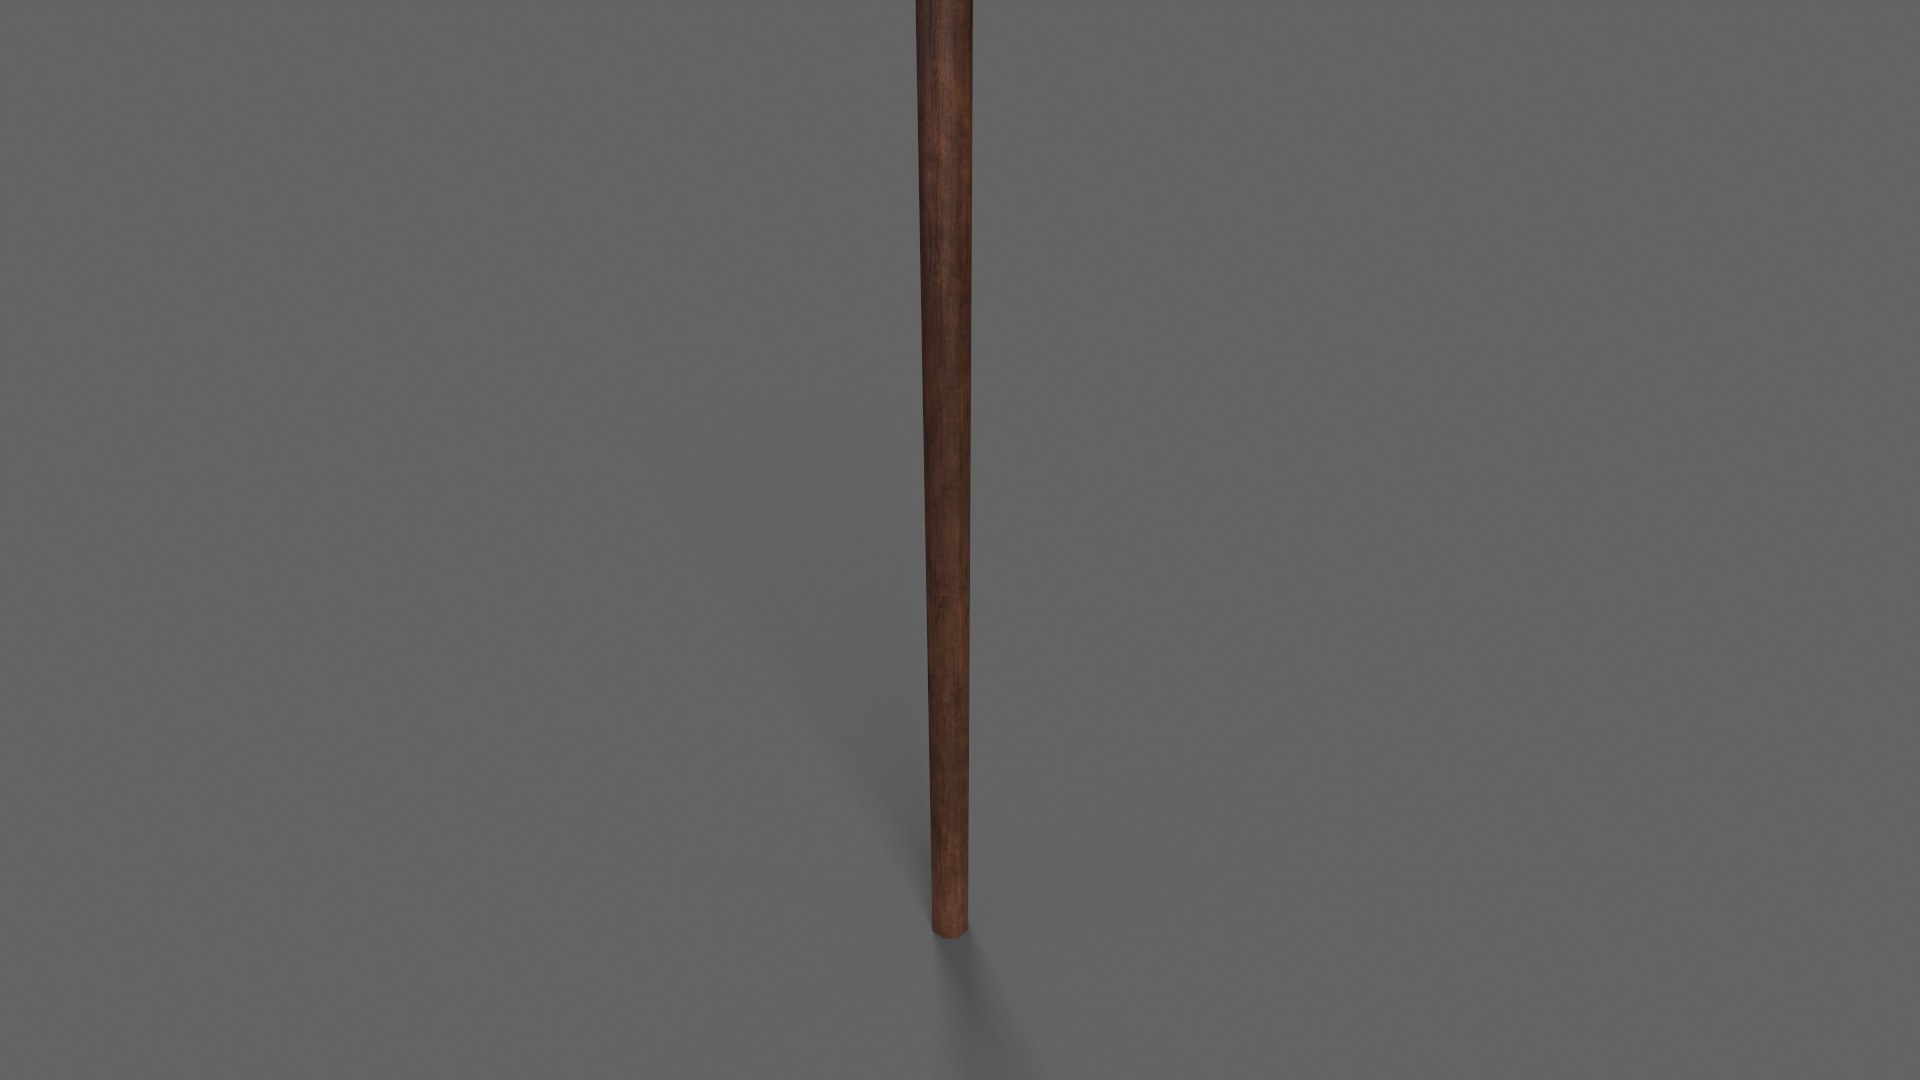 PBR Wushu Stick Wood4 3D Model - TurboSquid 1941947